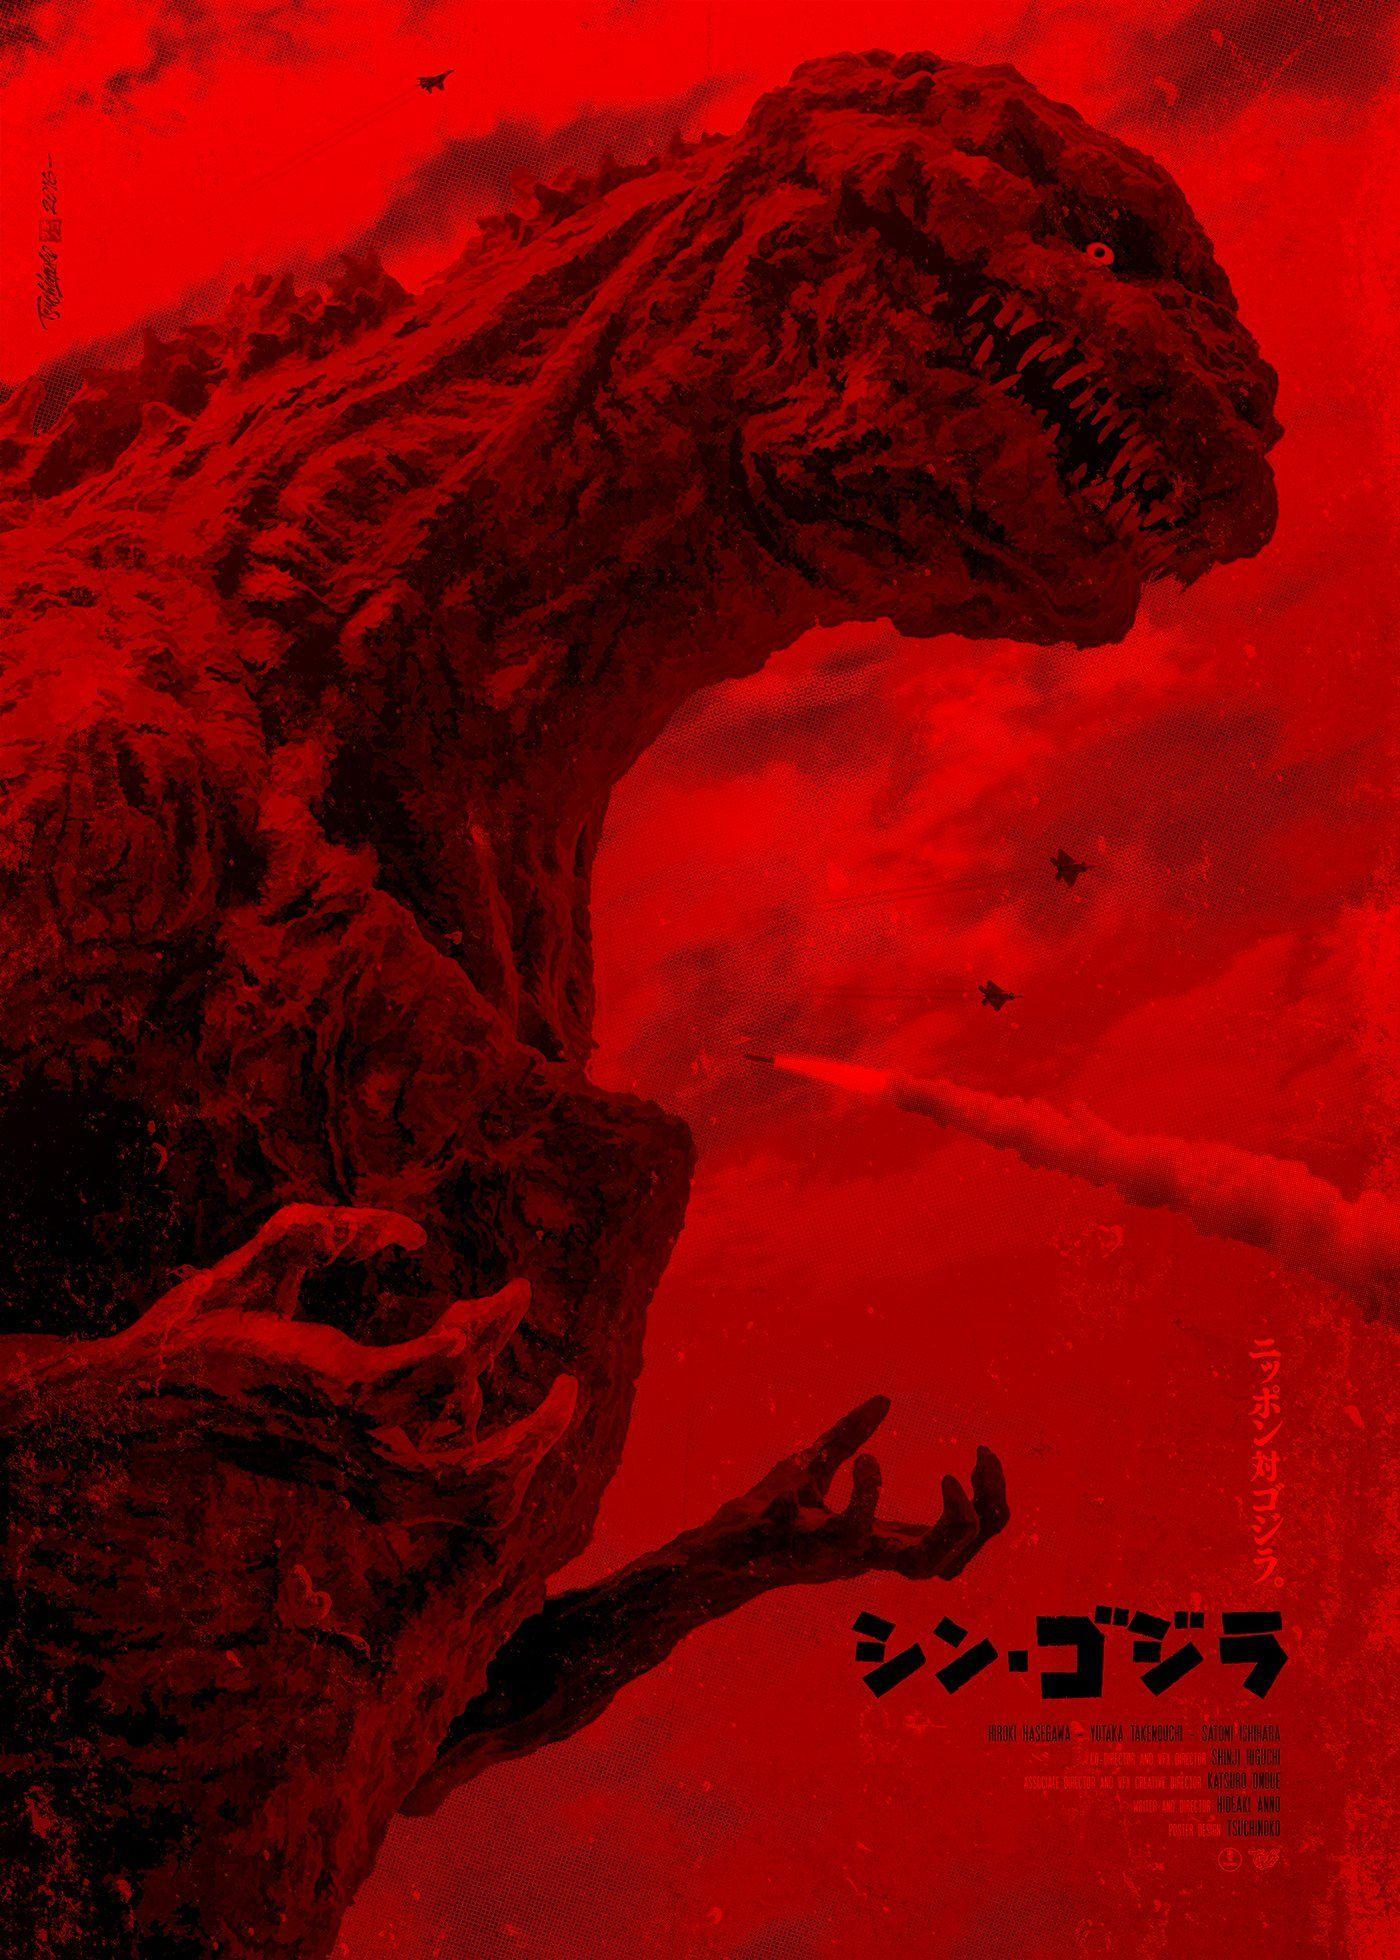 Shin Godzilla Wallpapers Top Free Shin Godzilla Backgrounds Wallpaperaccess